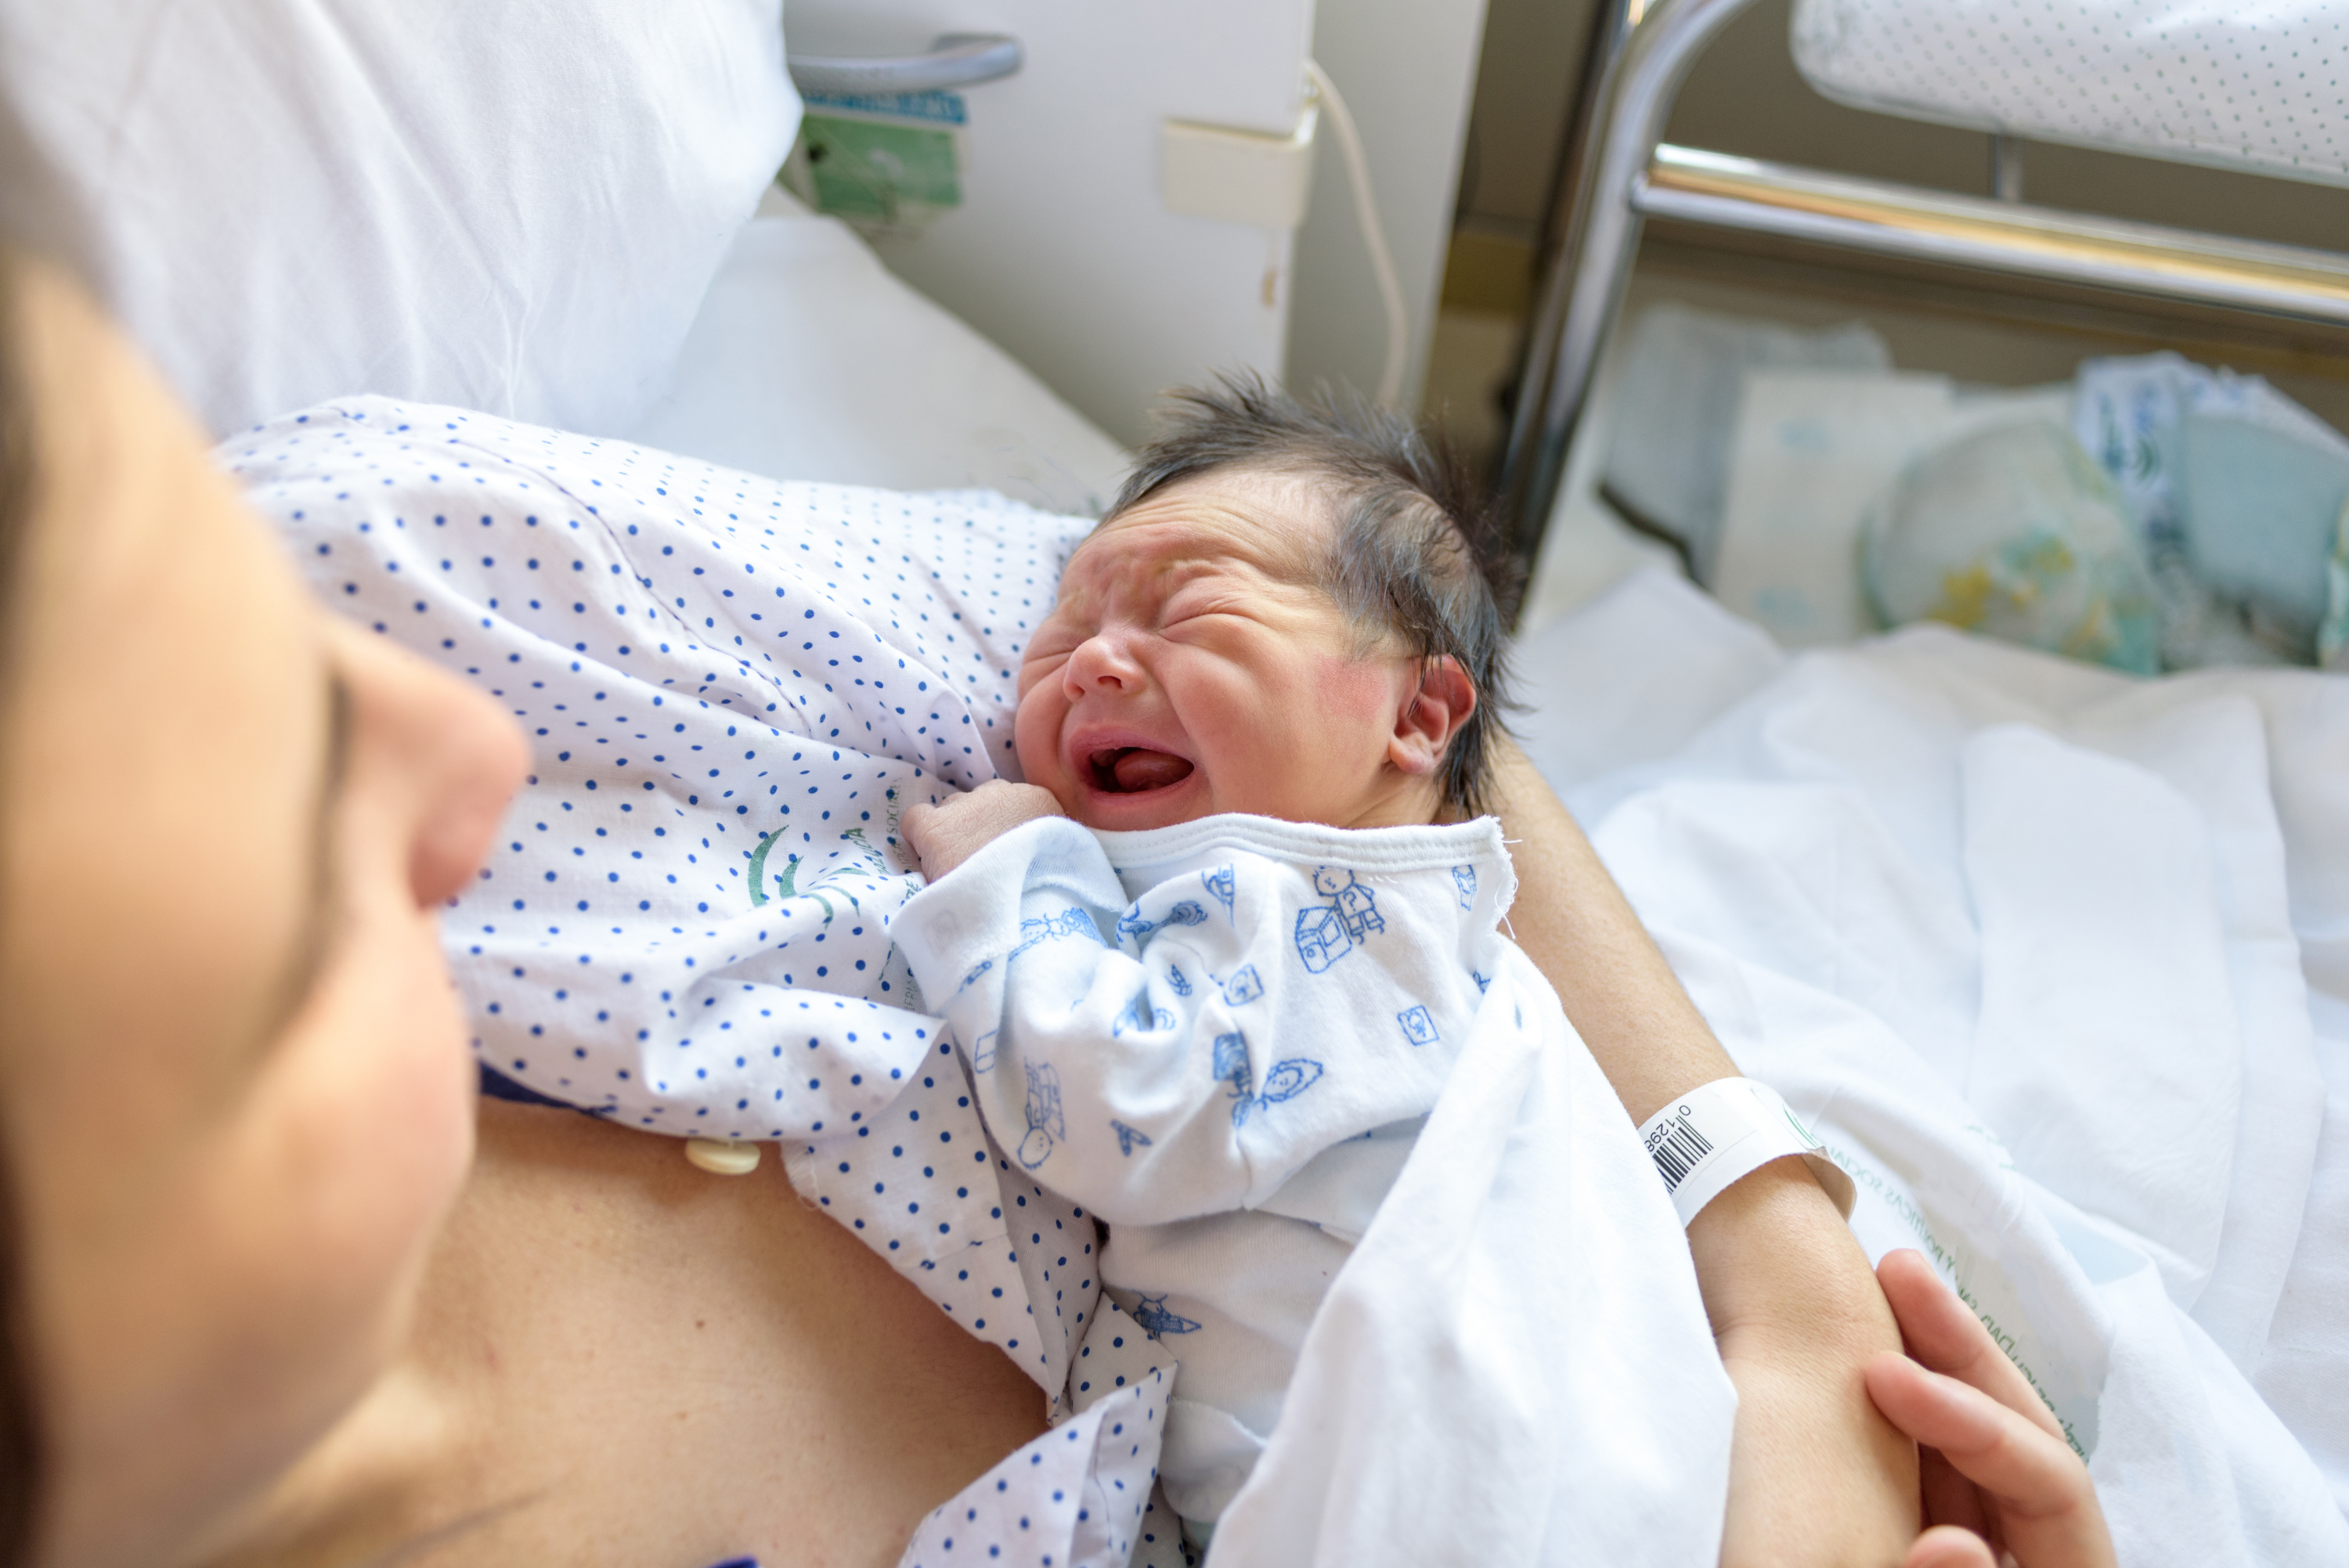 La charte du nouveau-né hospitalisé